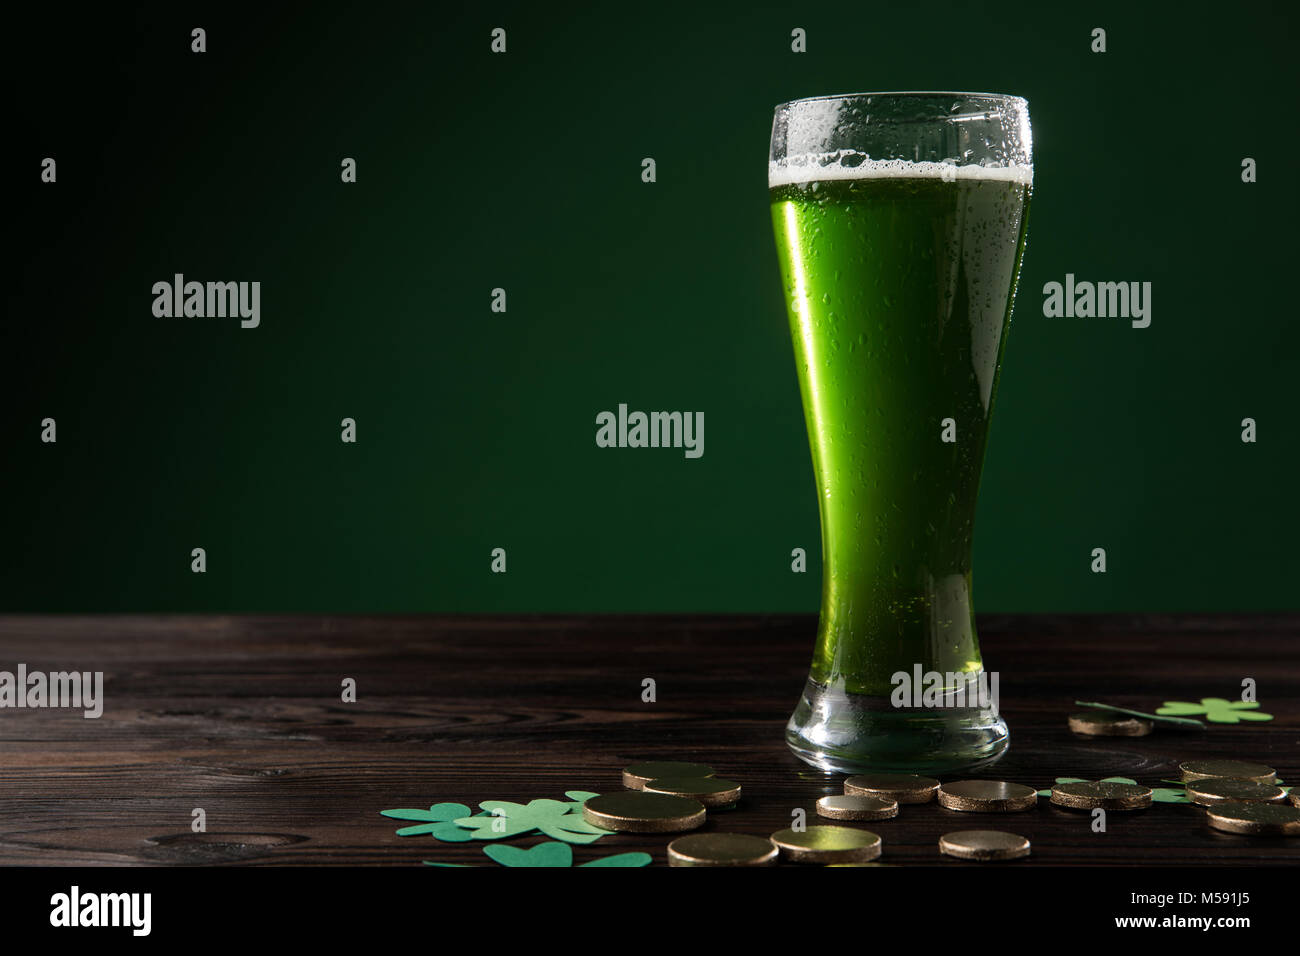 Glas grün Bier mit Shamrock und goldenen Münzen auf den Tisch, st patricks  day Konzept Stockfotografie - Alamy